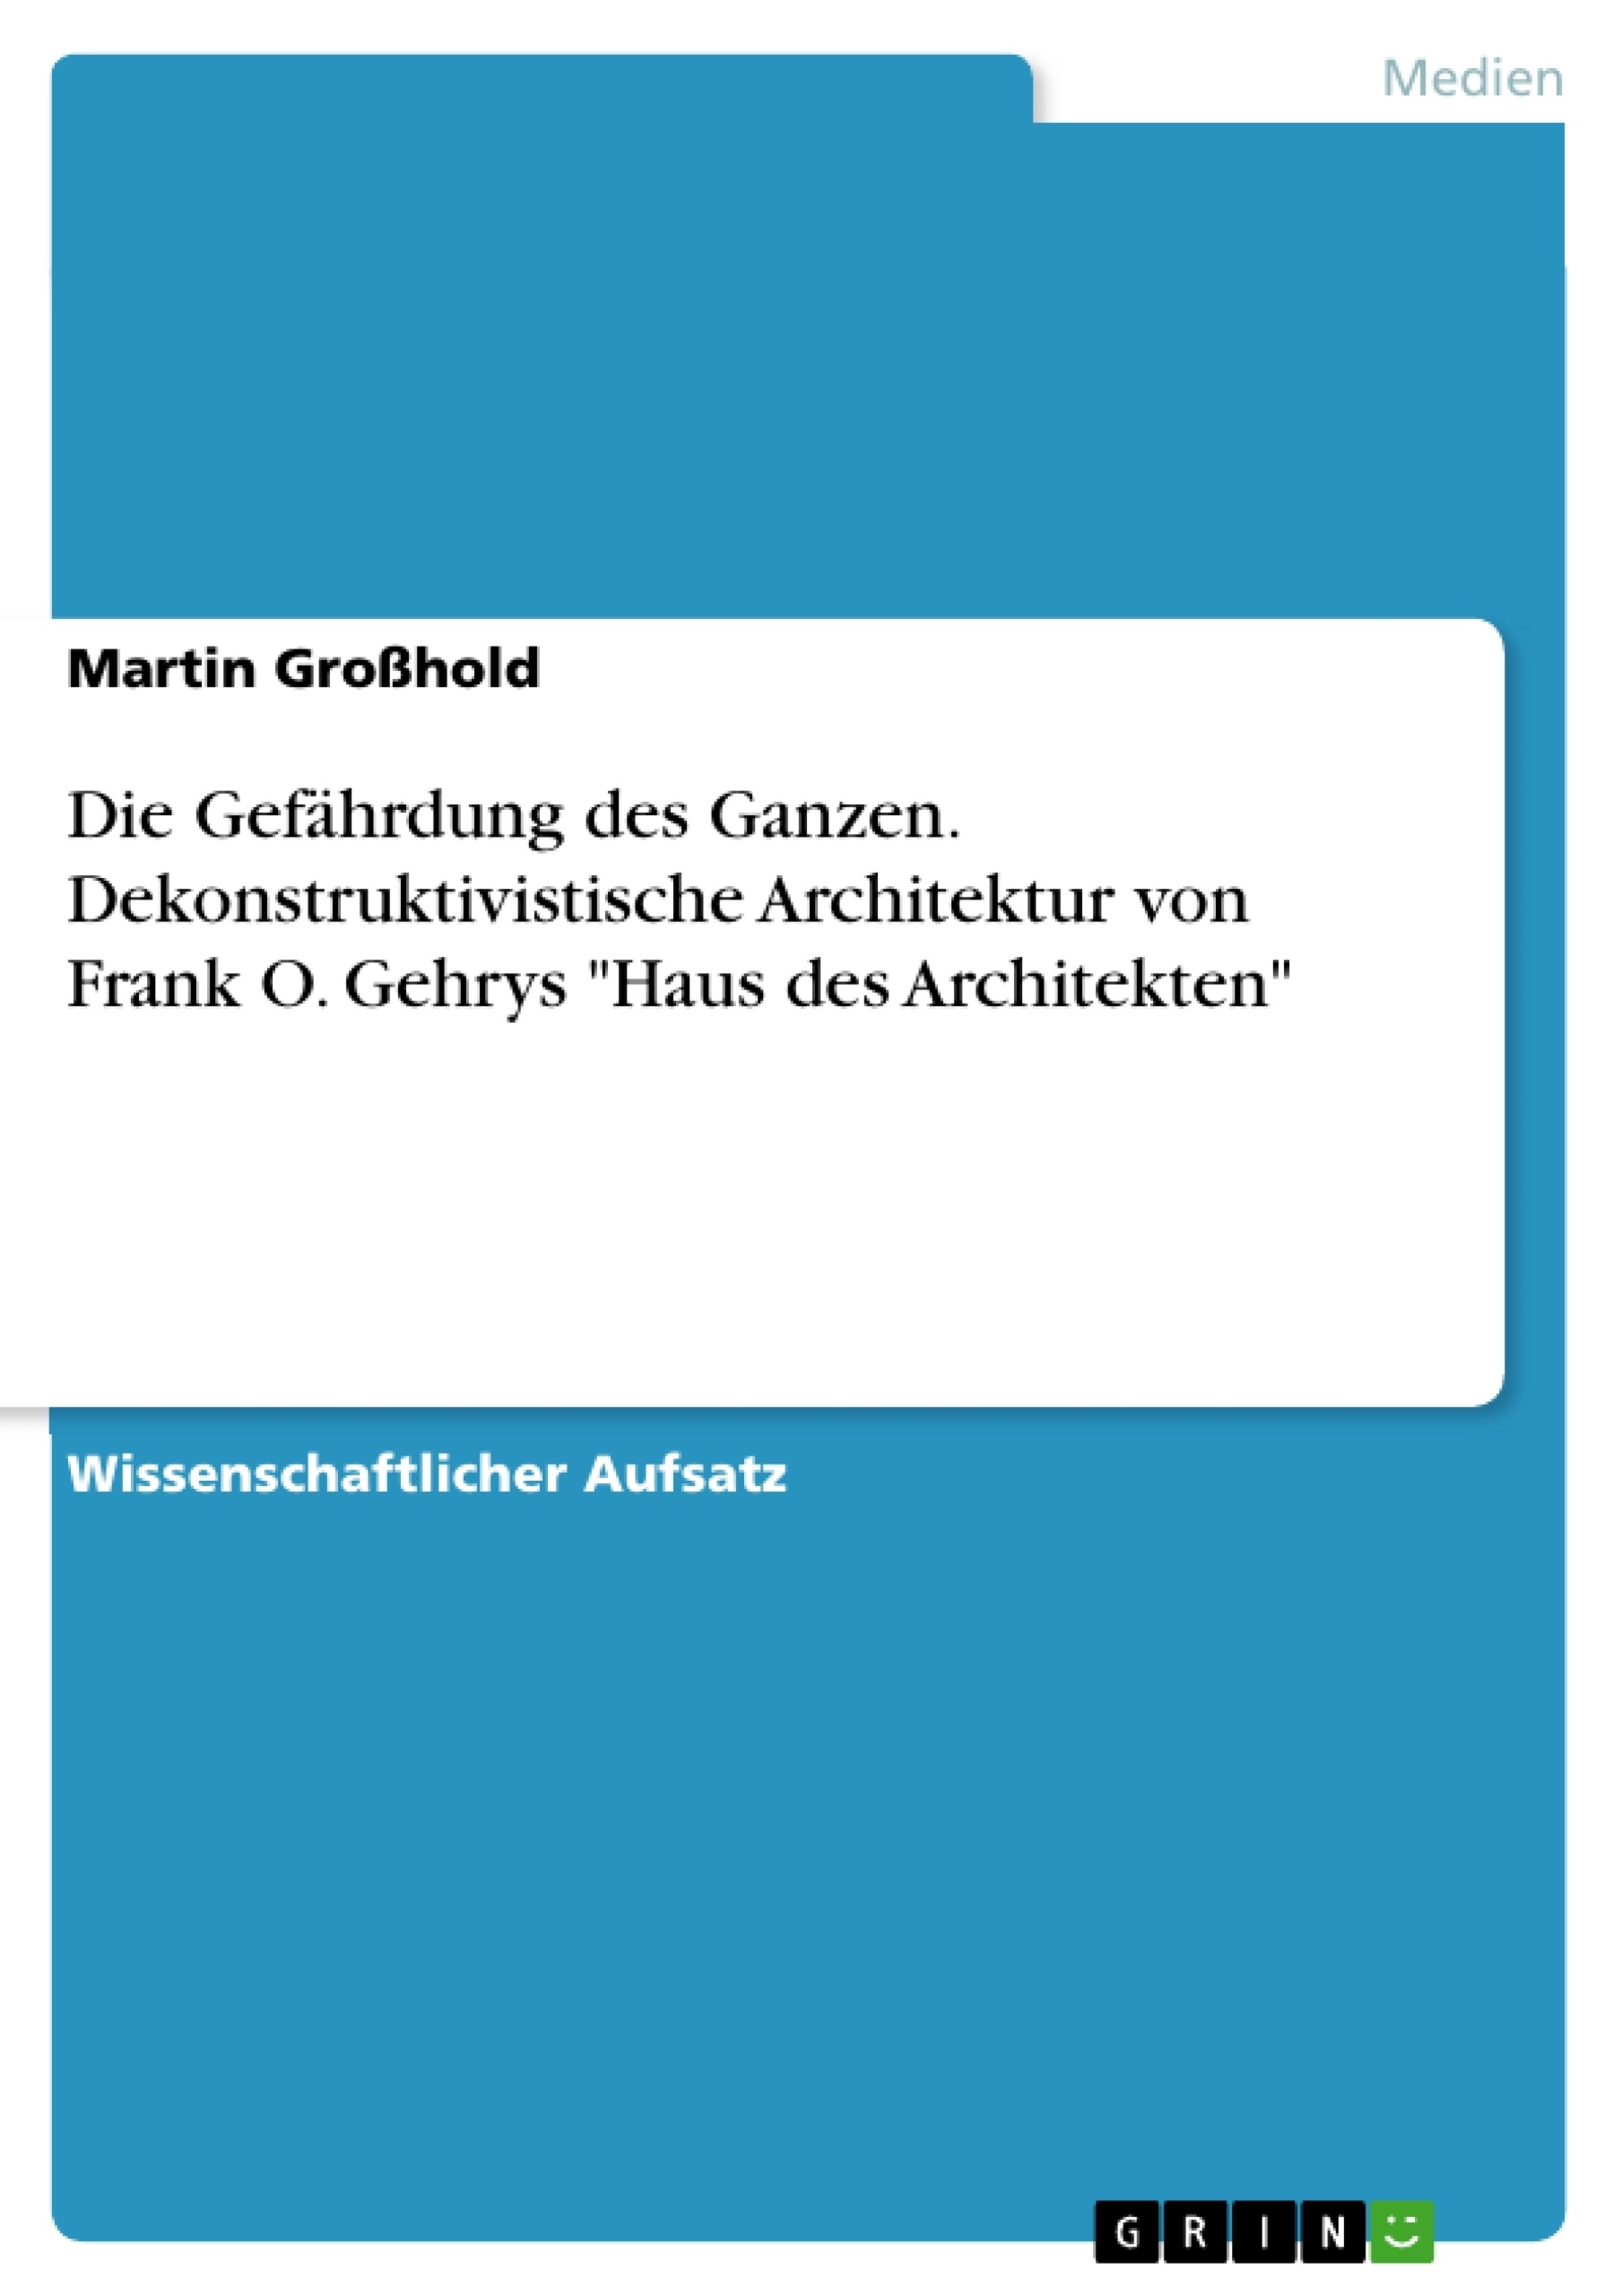 Título: Die Gefährdung des Ganzen. Dekonstruktivistische Architektur von Frank O. Gehrys "Haus des Architekten"